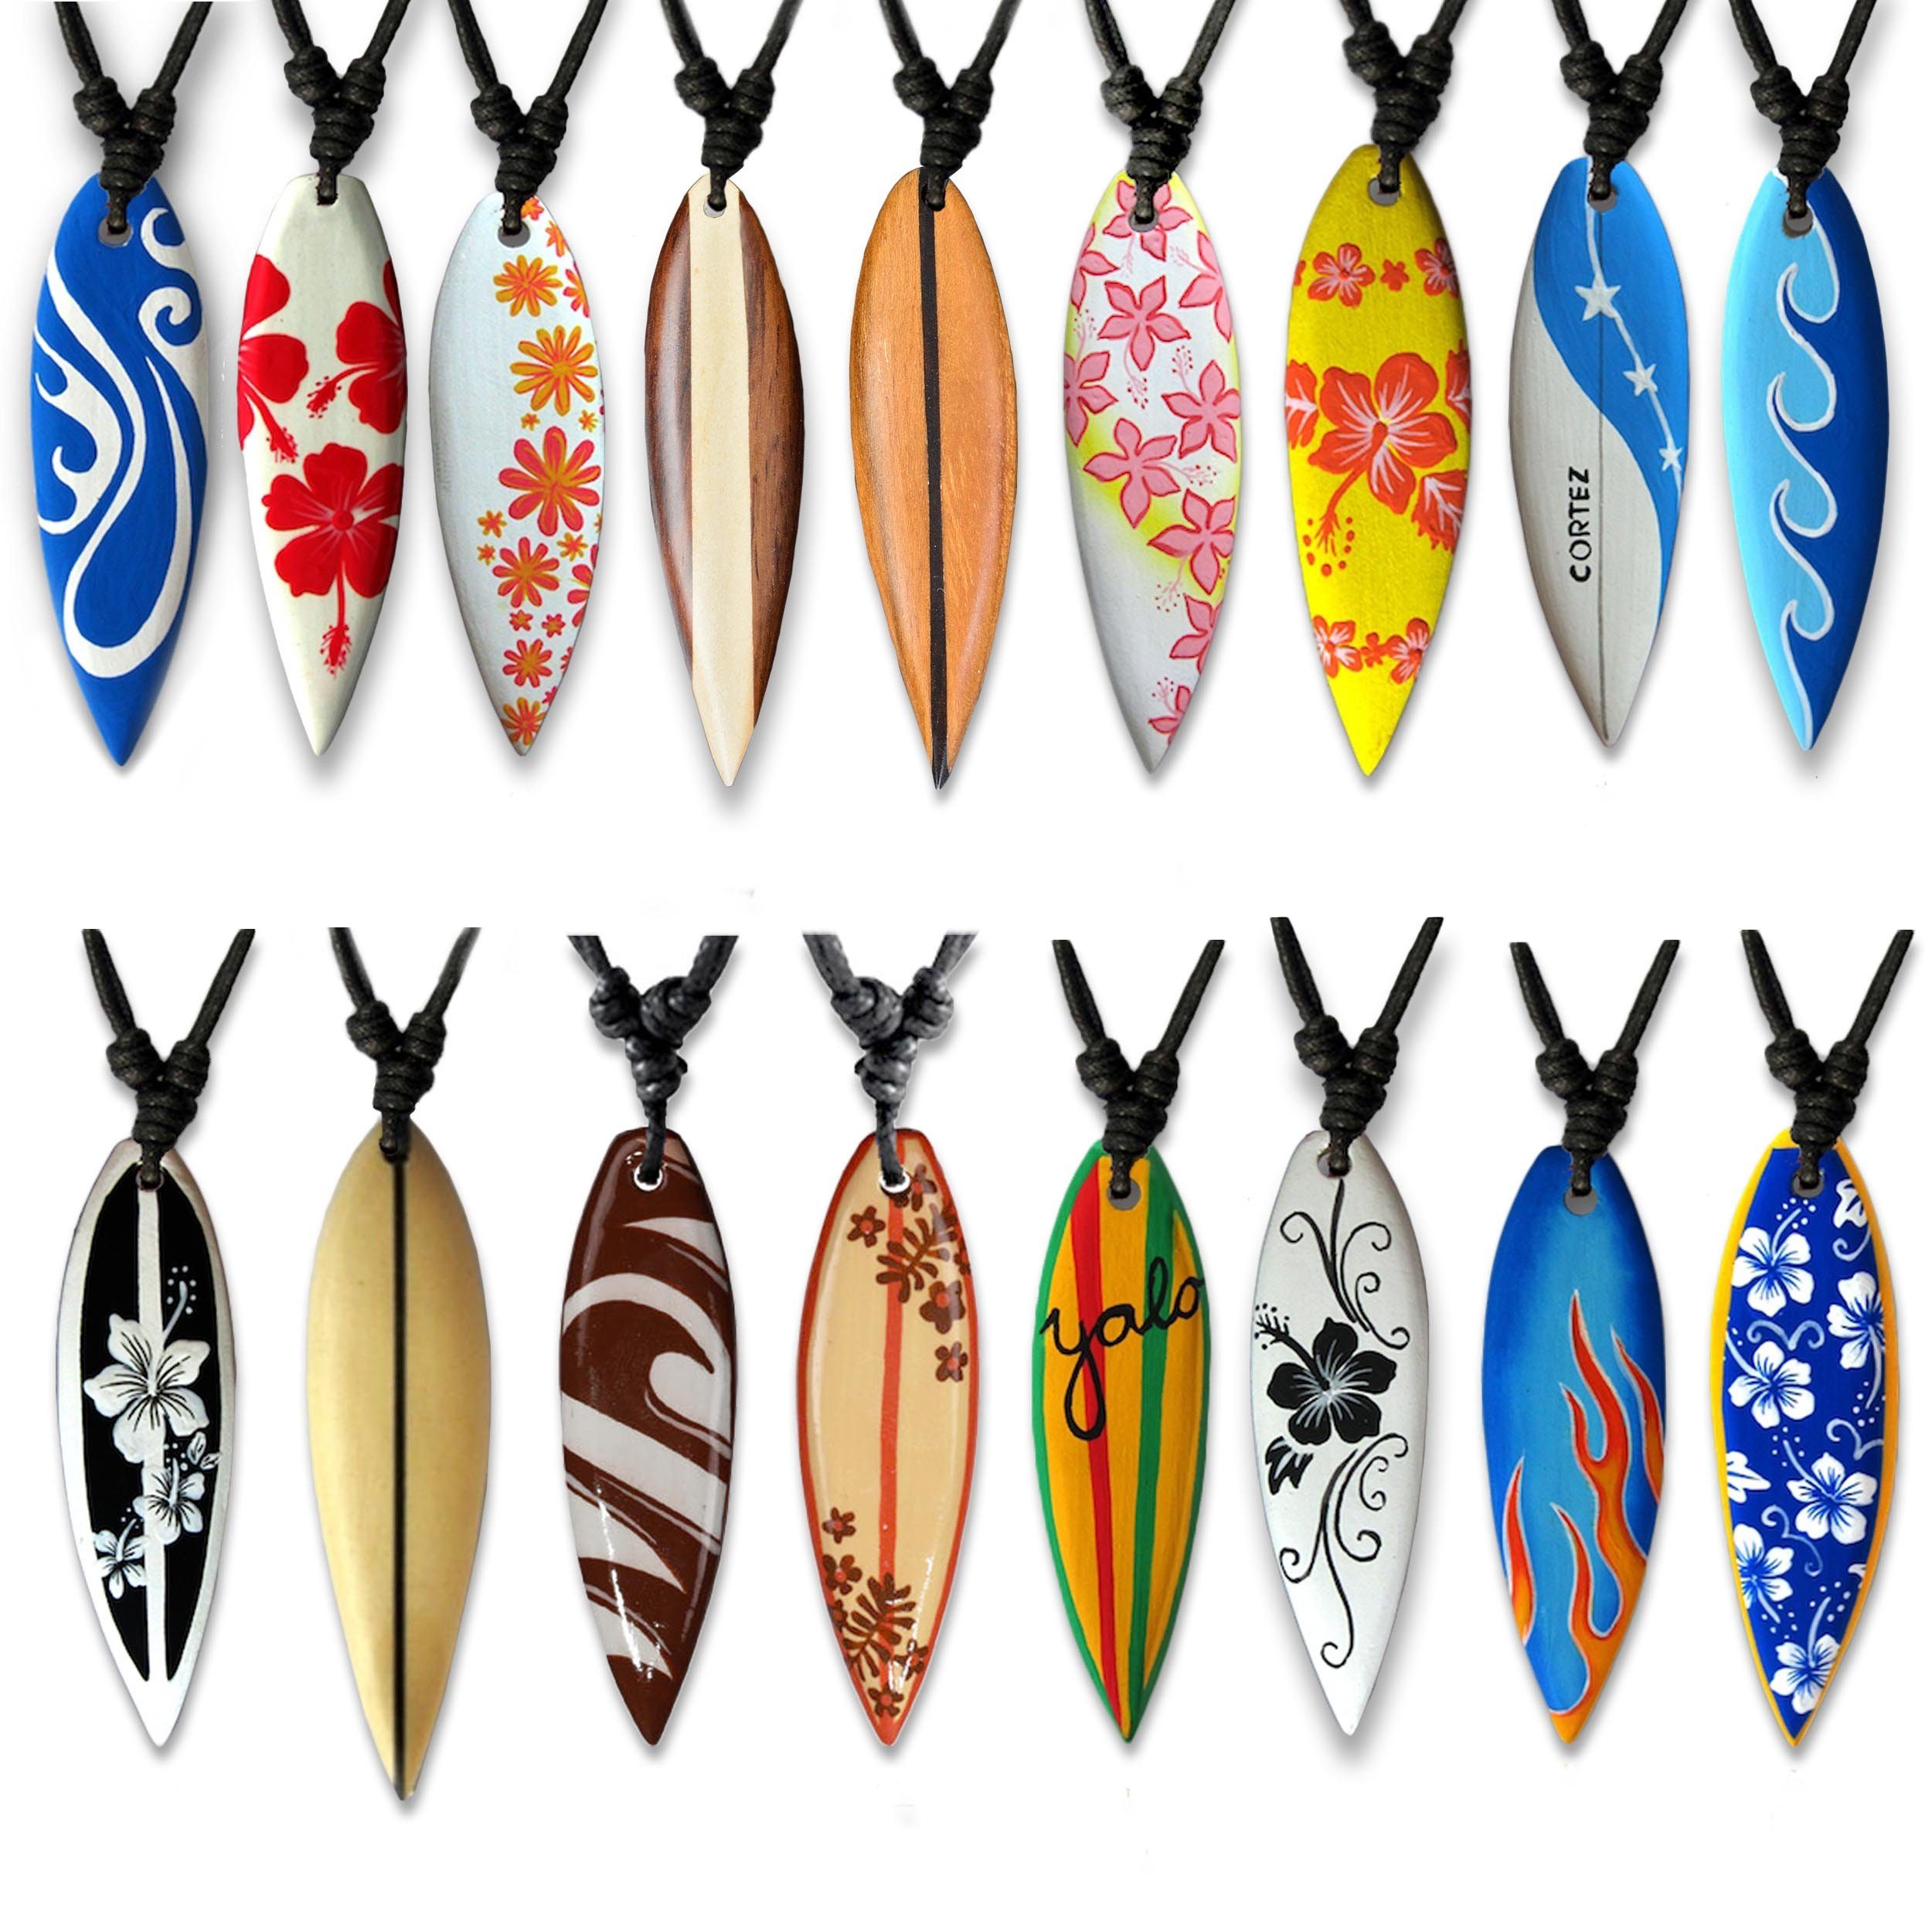 viva-adorno Kette Halskette Hawaii Holz Flammen Wellen Yolo Surferkette Surfer mit Anhänger Beige Designs, Blume verschiedene Holzkette Surfbrett Hibiskus